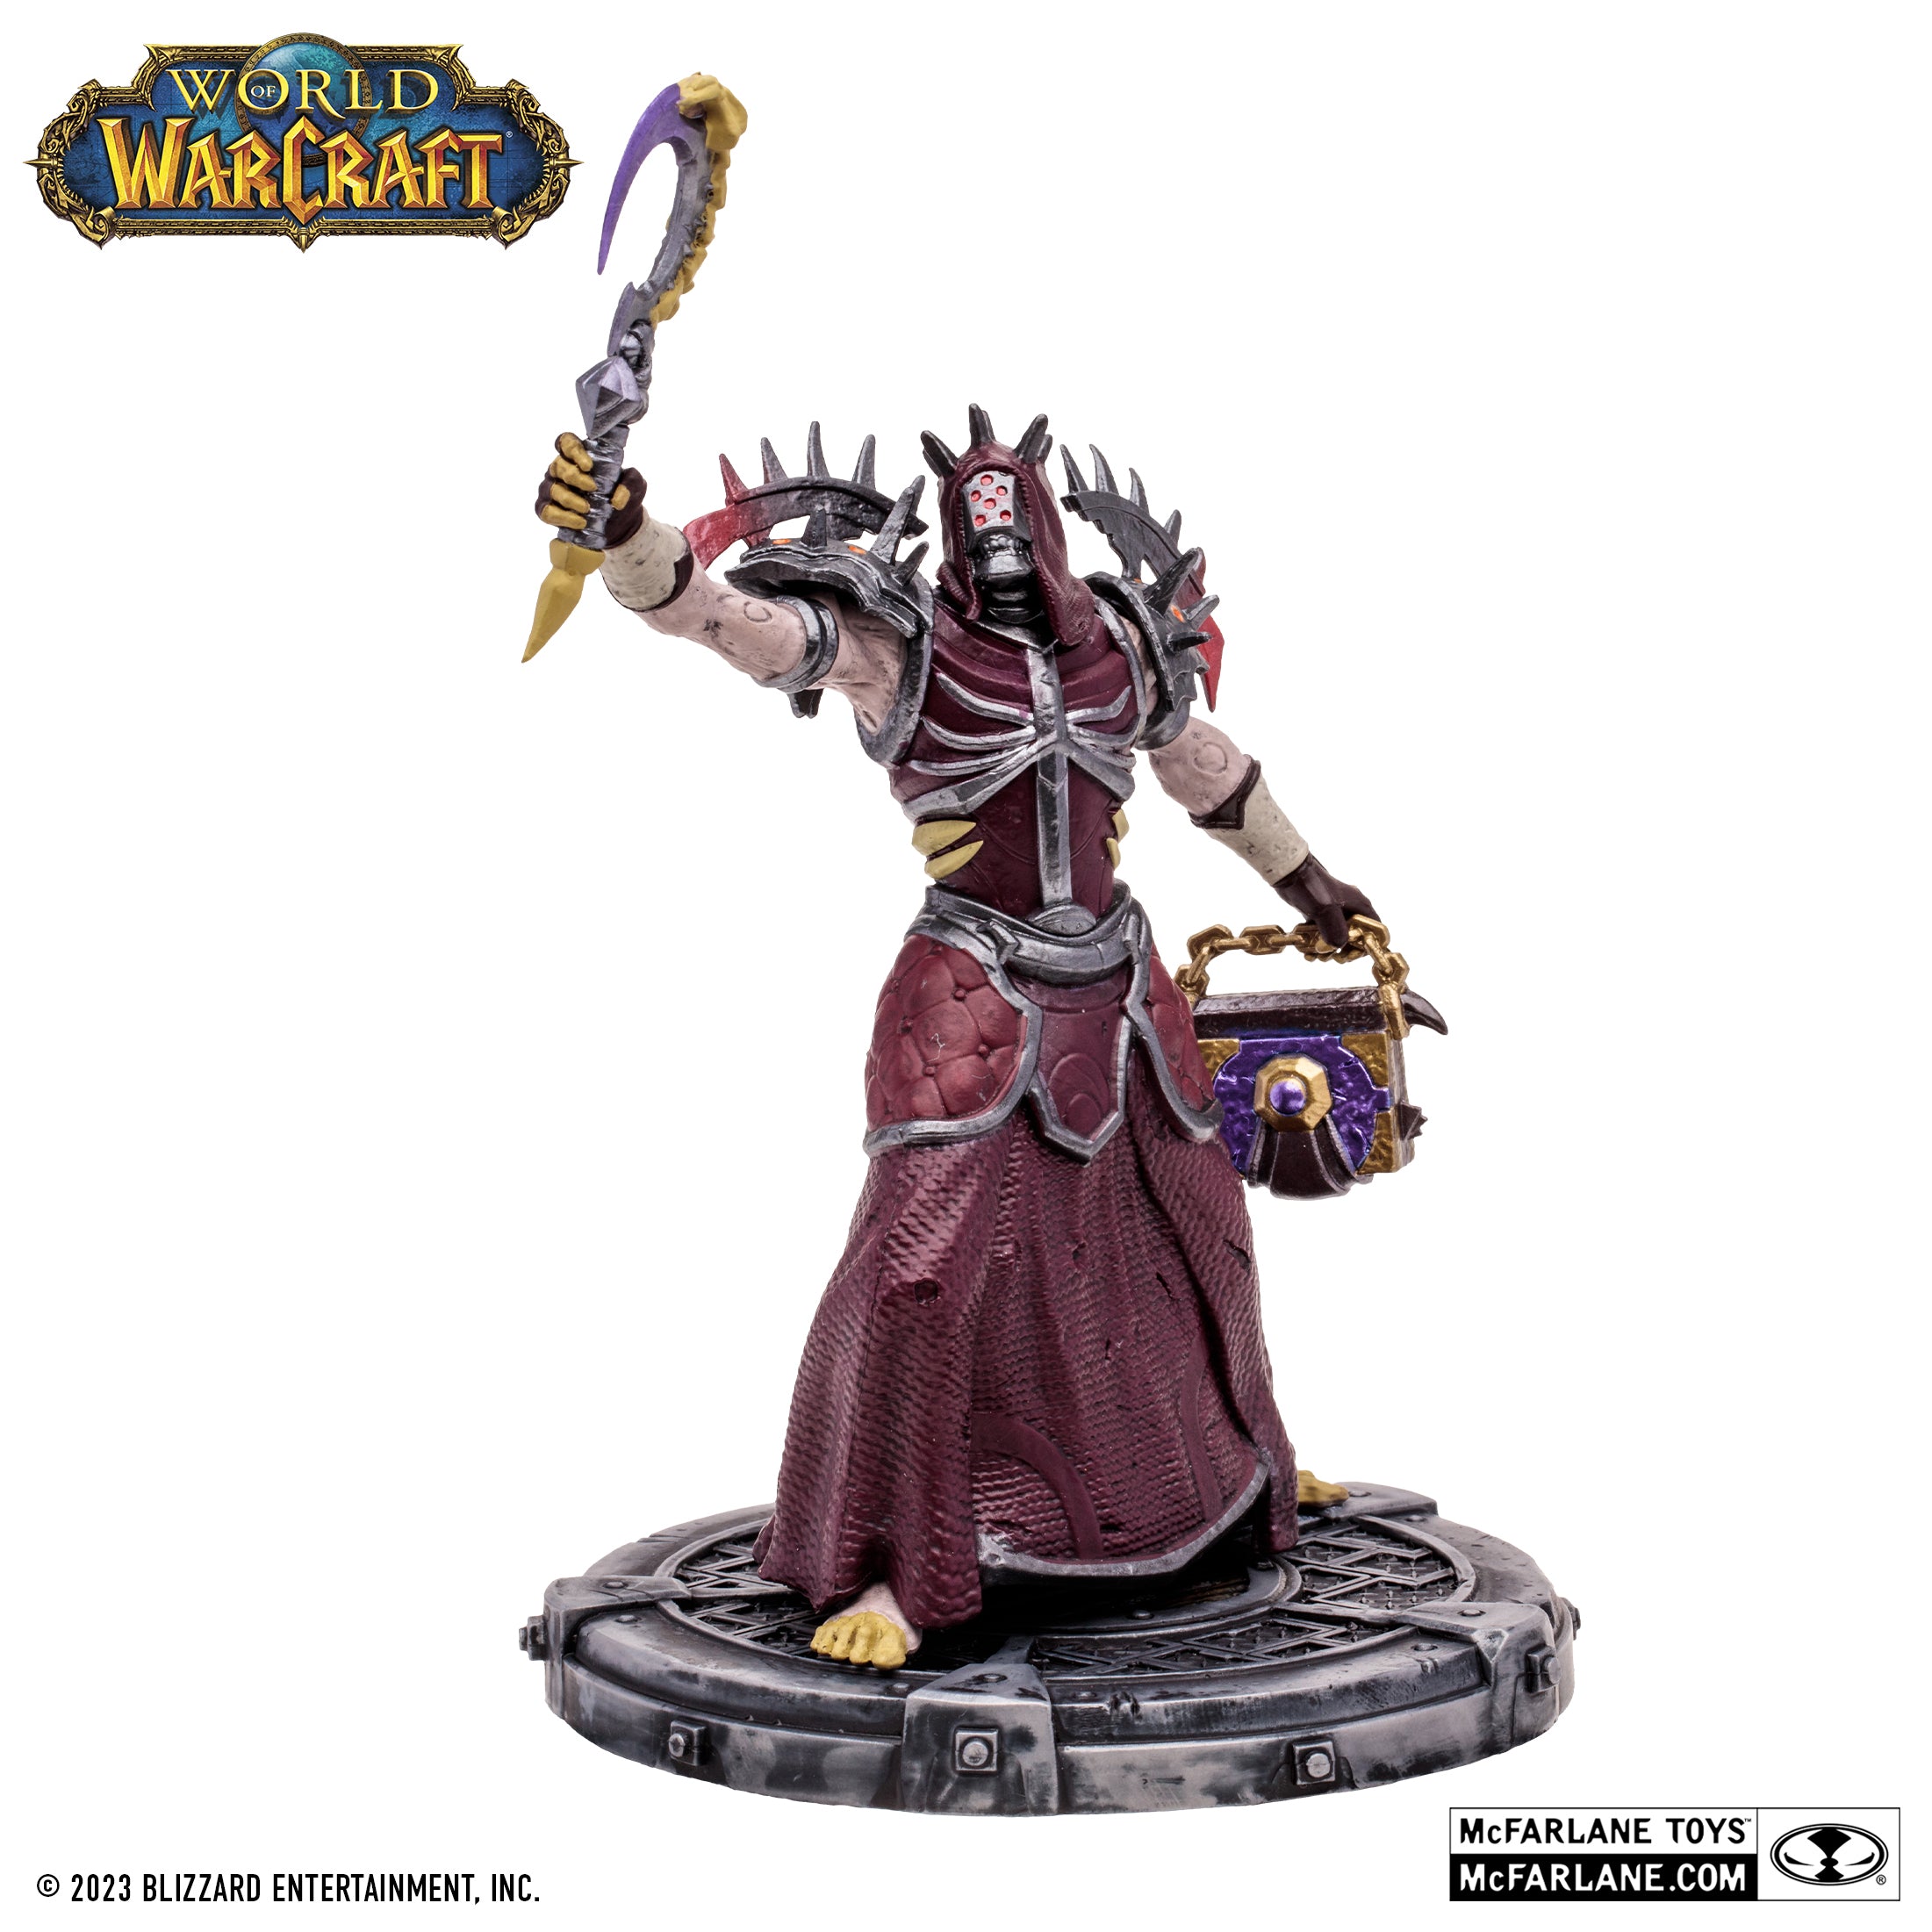 McFarlane Estatua: World Of Warcraft - No Muerto Sacerdote Brujo Rare Escala 1/12